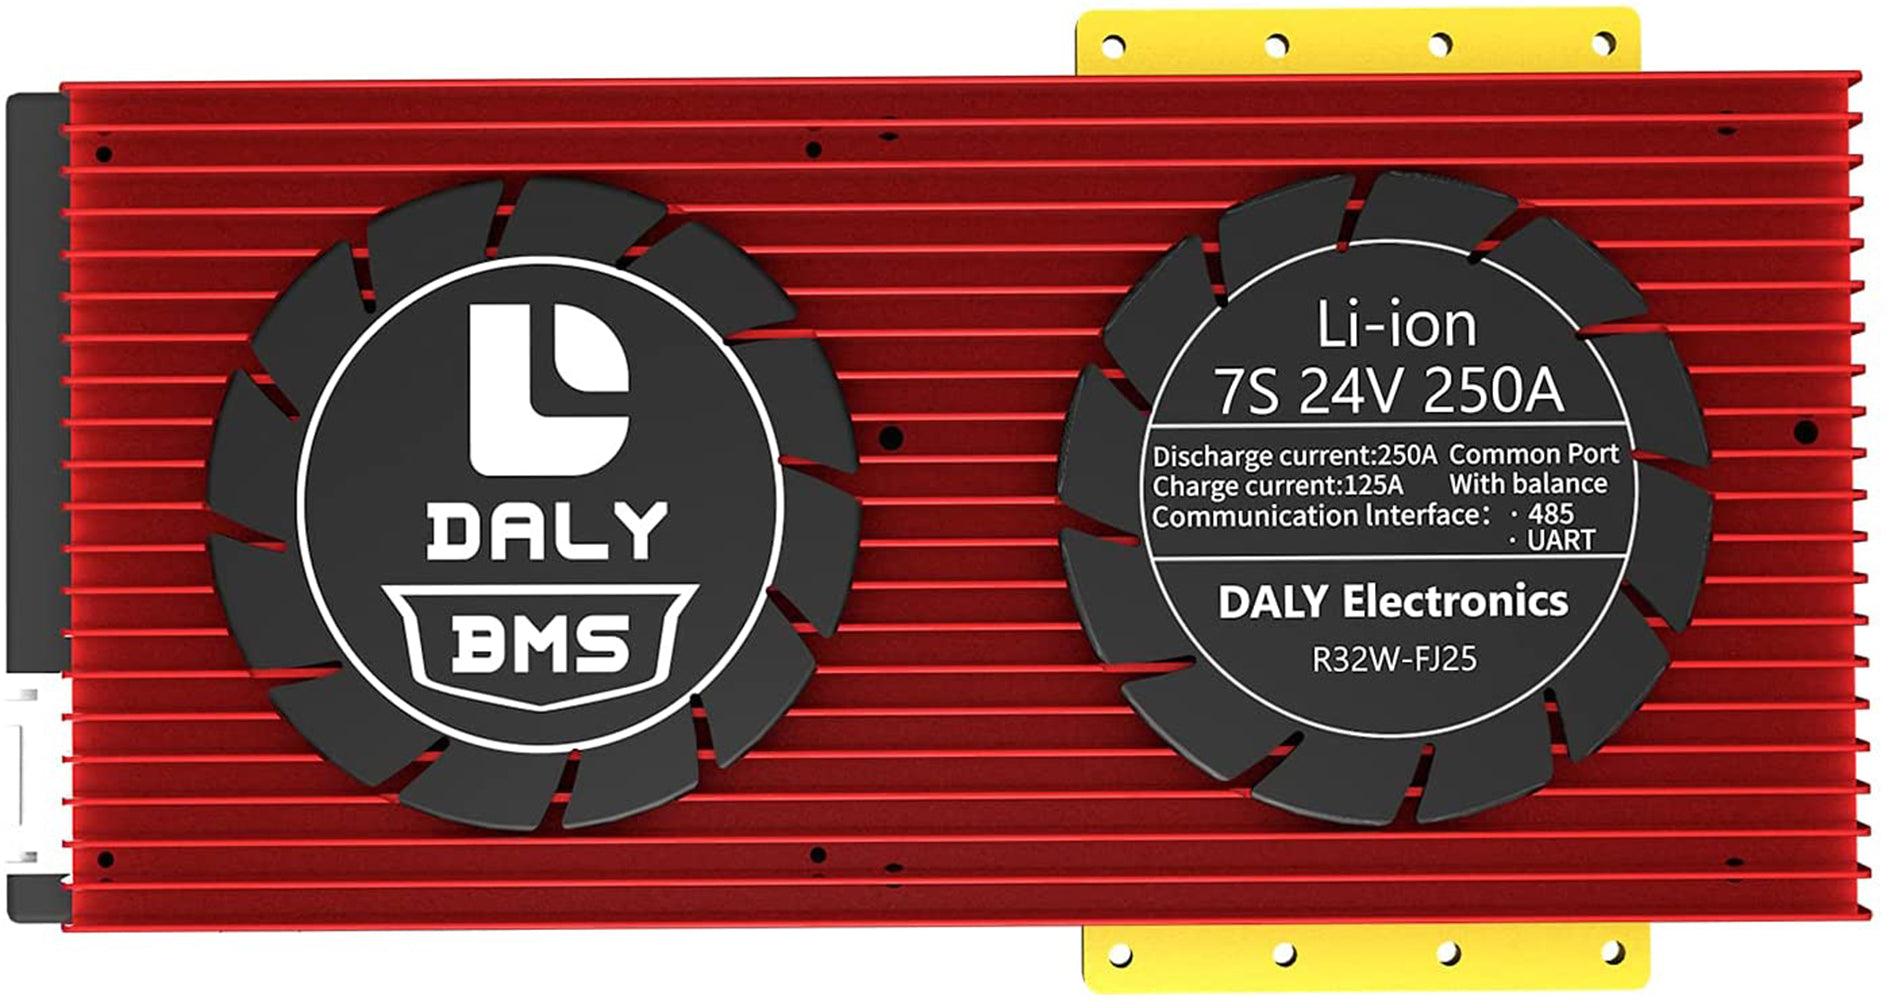 Daly smart bms Li-ion 7S 24V 250A bluetooth 32130221